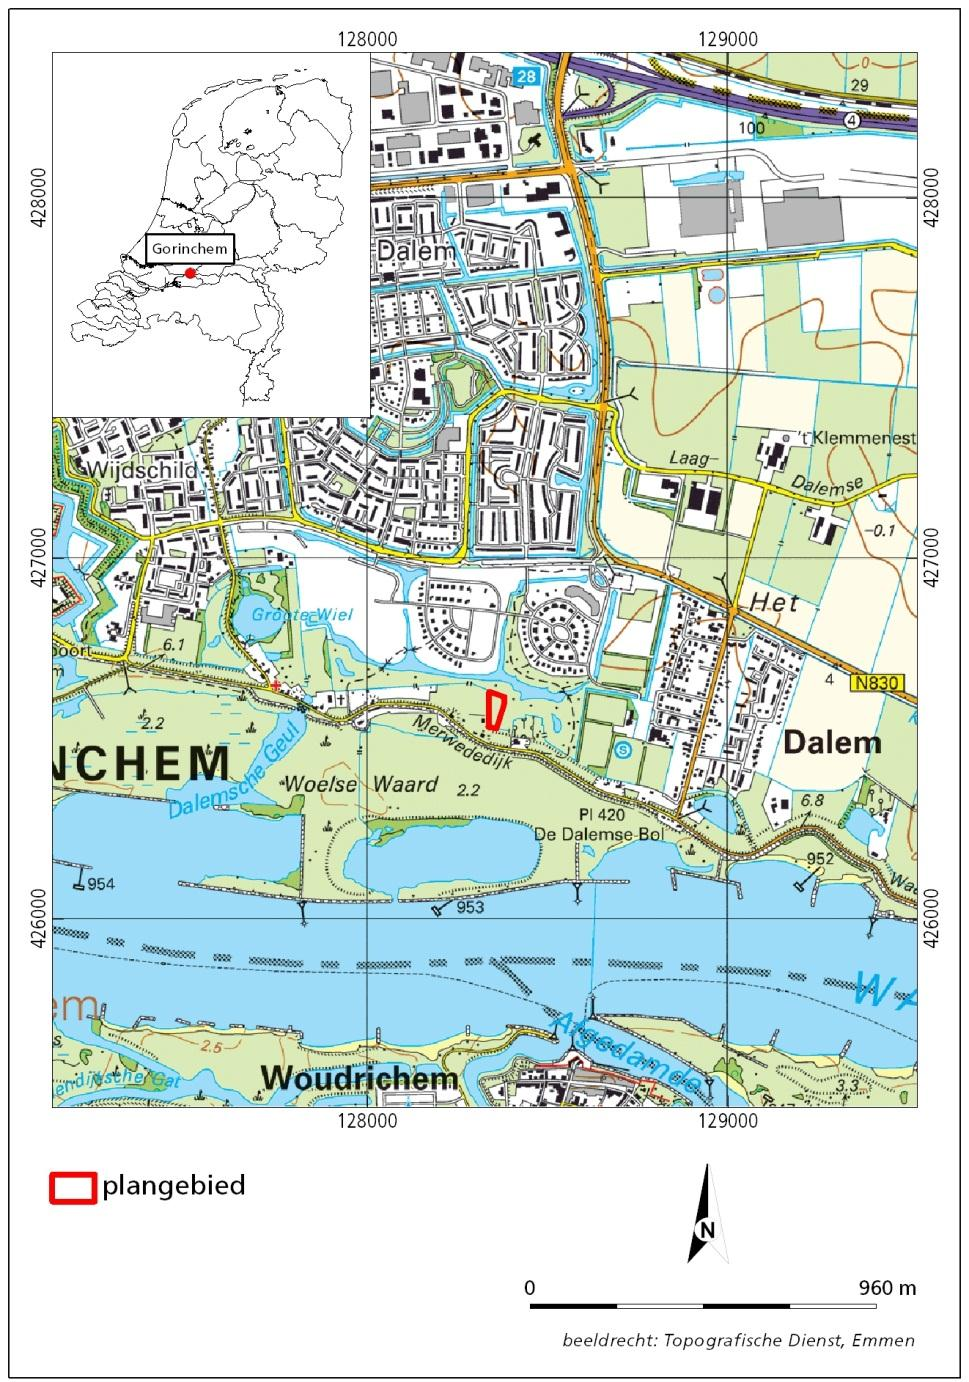 1.2 Ligging van het gebied Het plangebied ligt aan de noordkant van de Merwededijk tussen Gorinchem en Dalem.